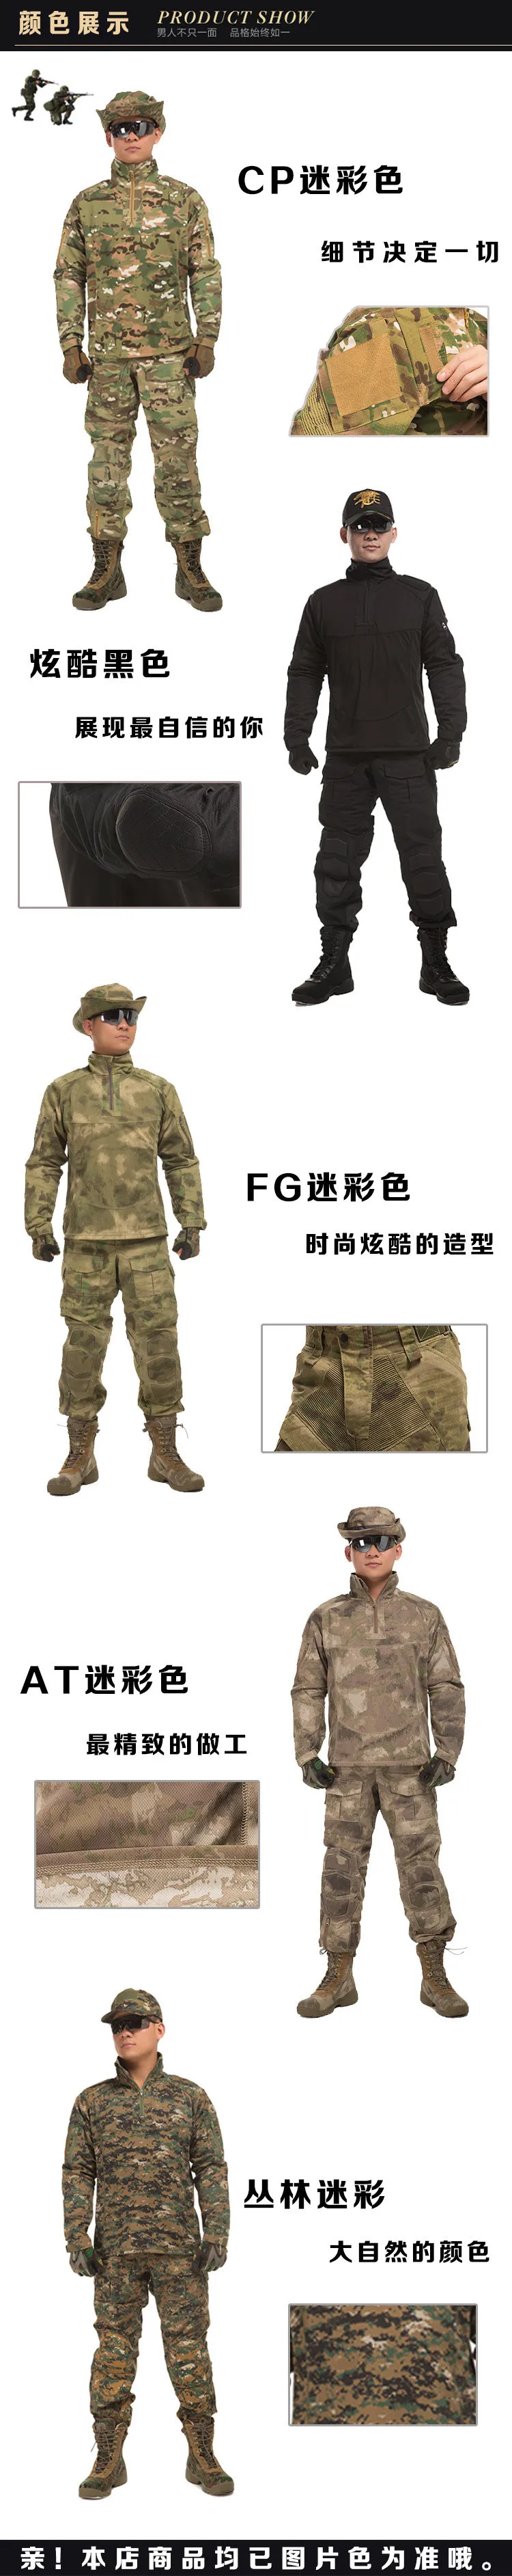 Военная форма для мужчин в армейском стиле США,, новая аутентичная мужская униформа для тренировок в поле, стрелок, Боевая форма, рубашка и штаны